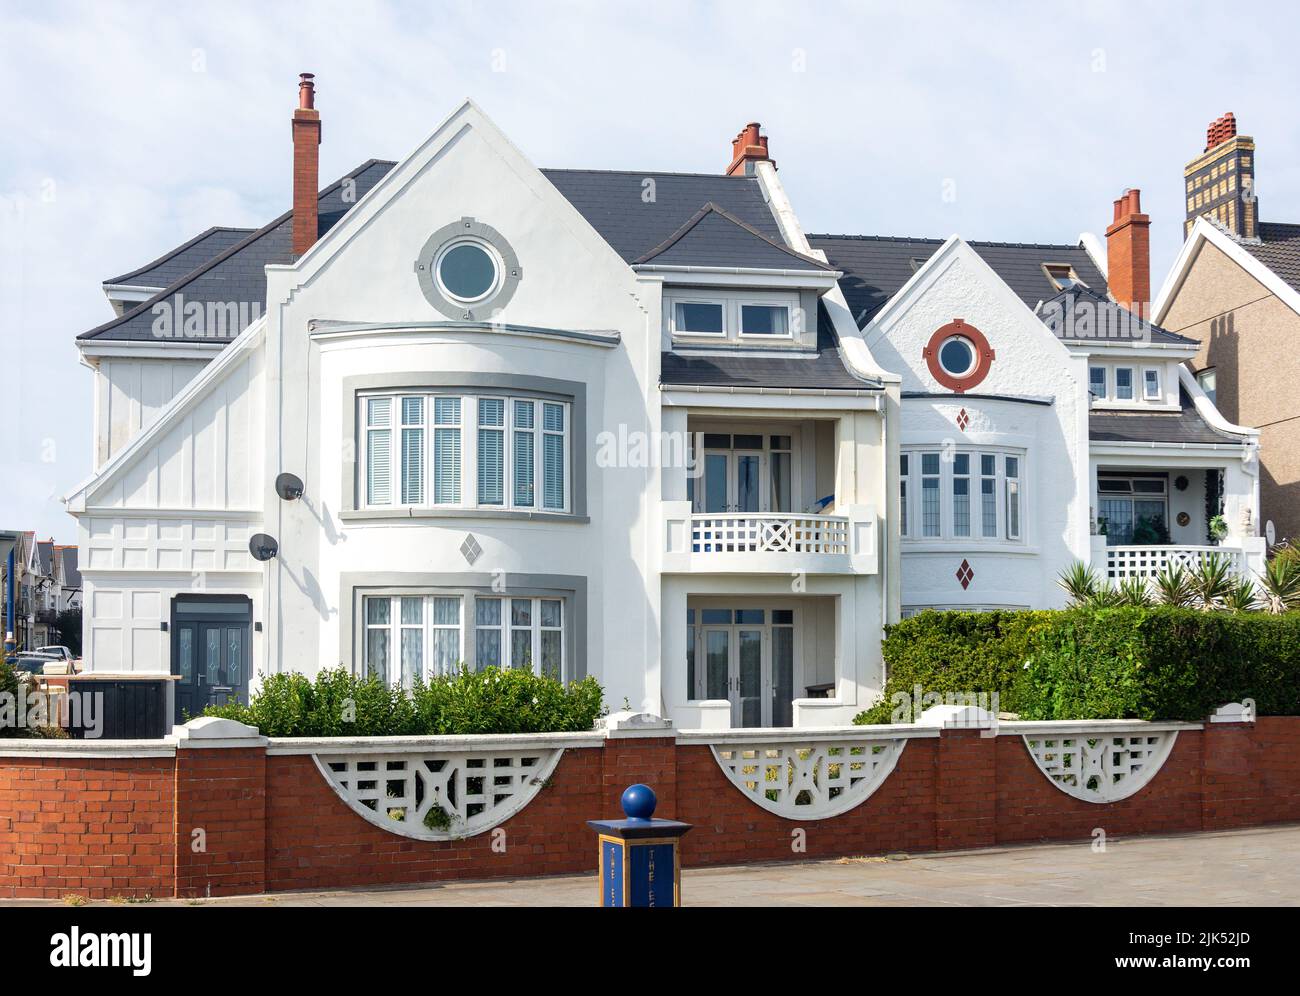 Maison d'époque en bord de mer, Esplanade, Porthcawl, Bridgend County Borough (Pen-y-bont), pays de Galles (Cymru), Royaume-Uni Banque D'Images